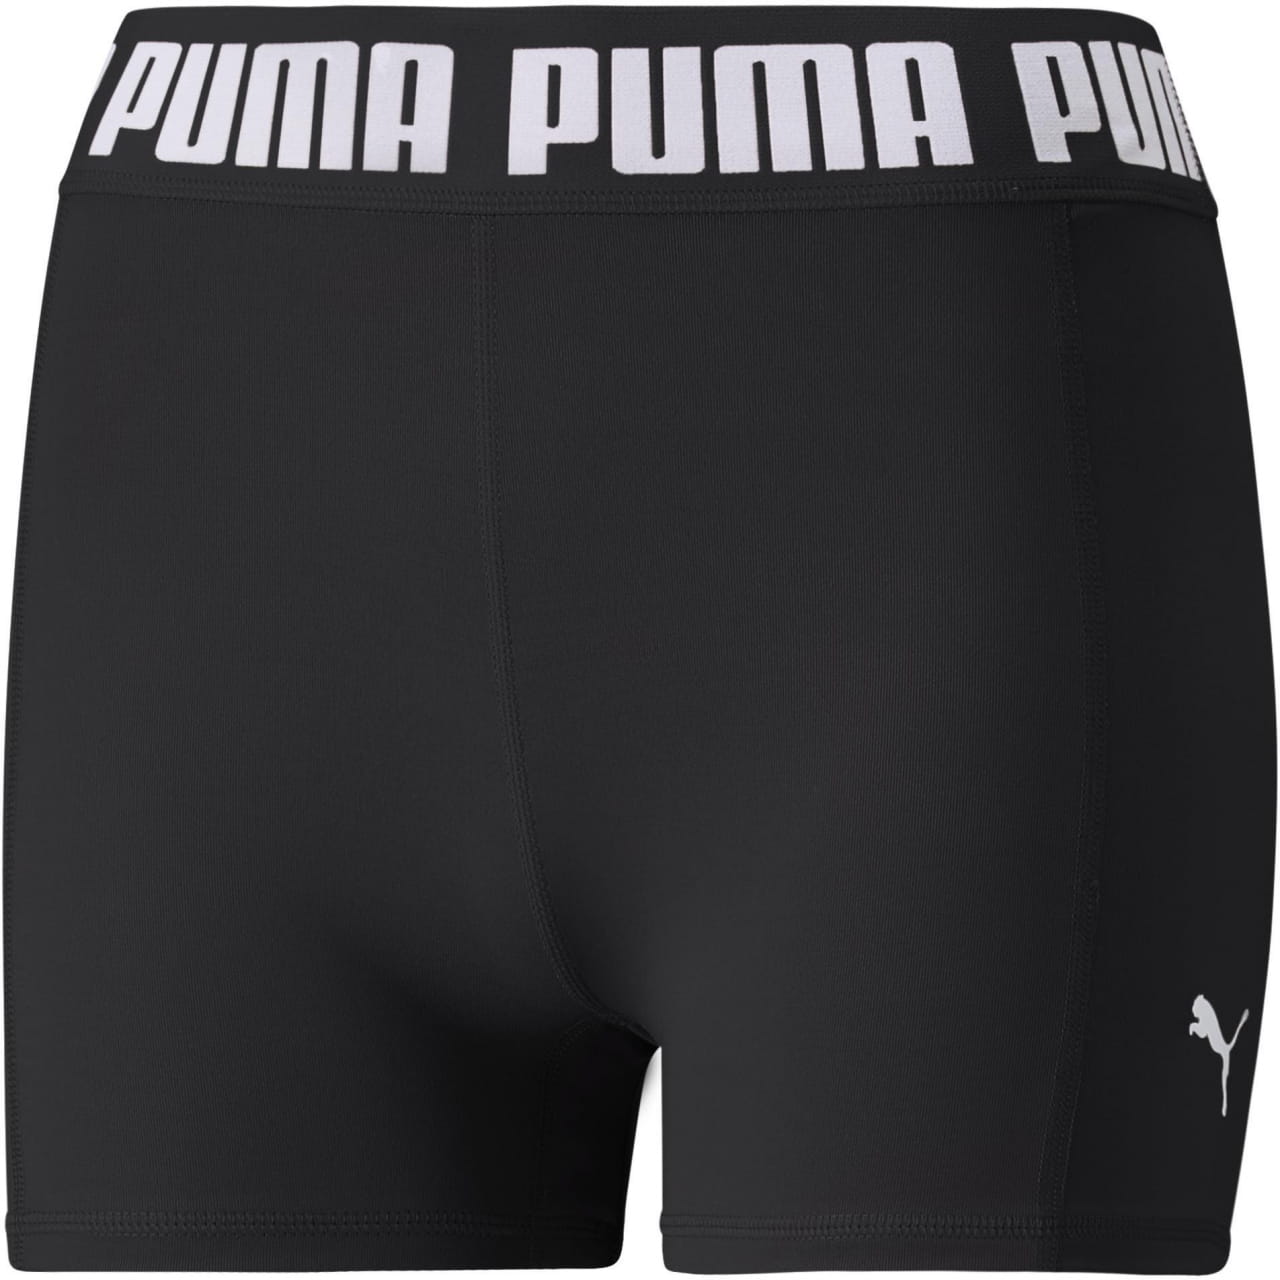 Mallas deportivas para mujer Puma Strong 3" Tight Short